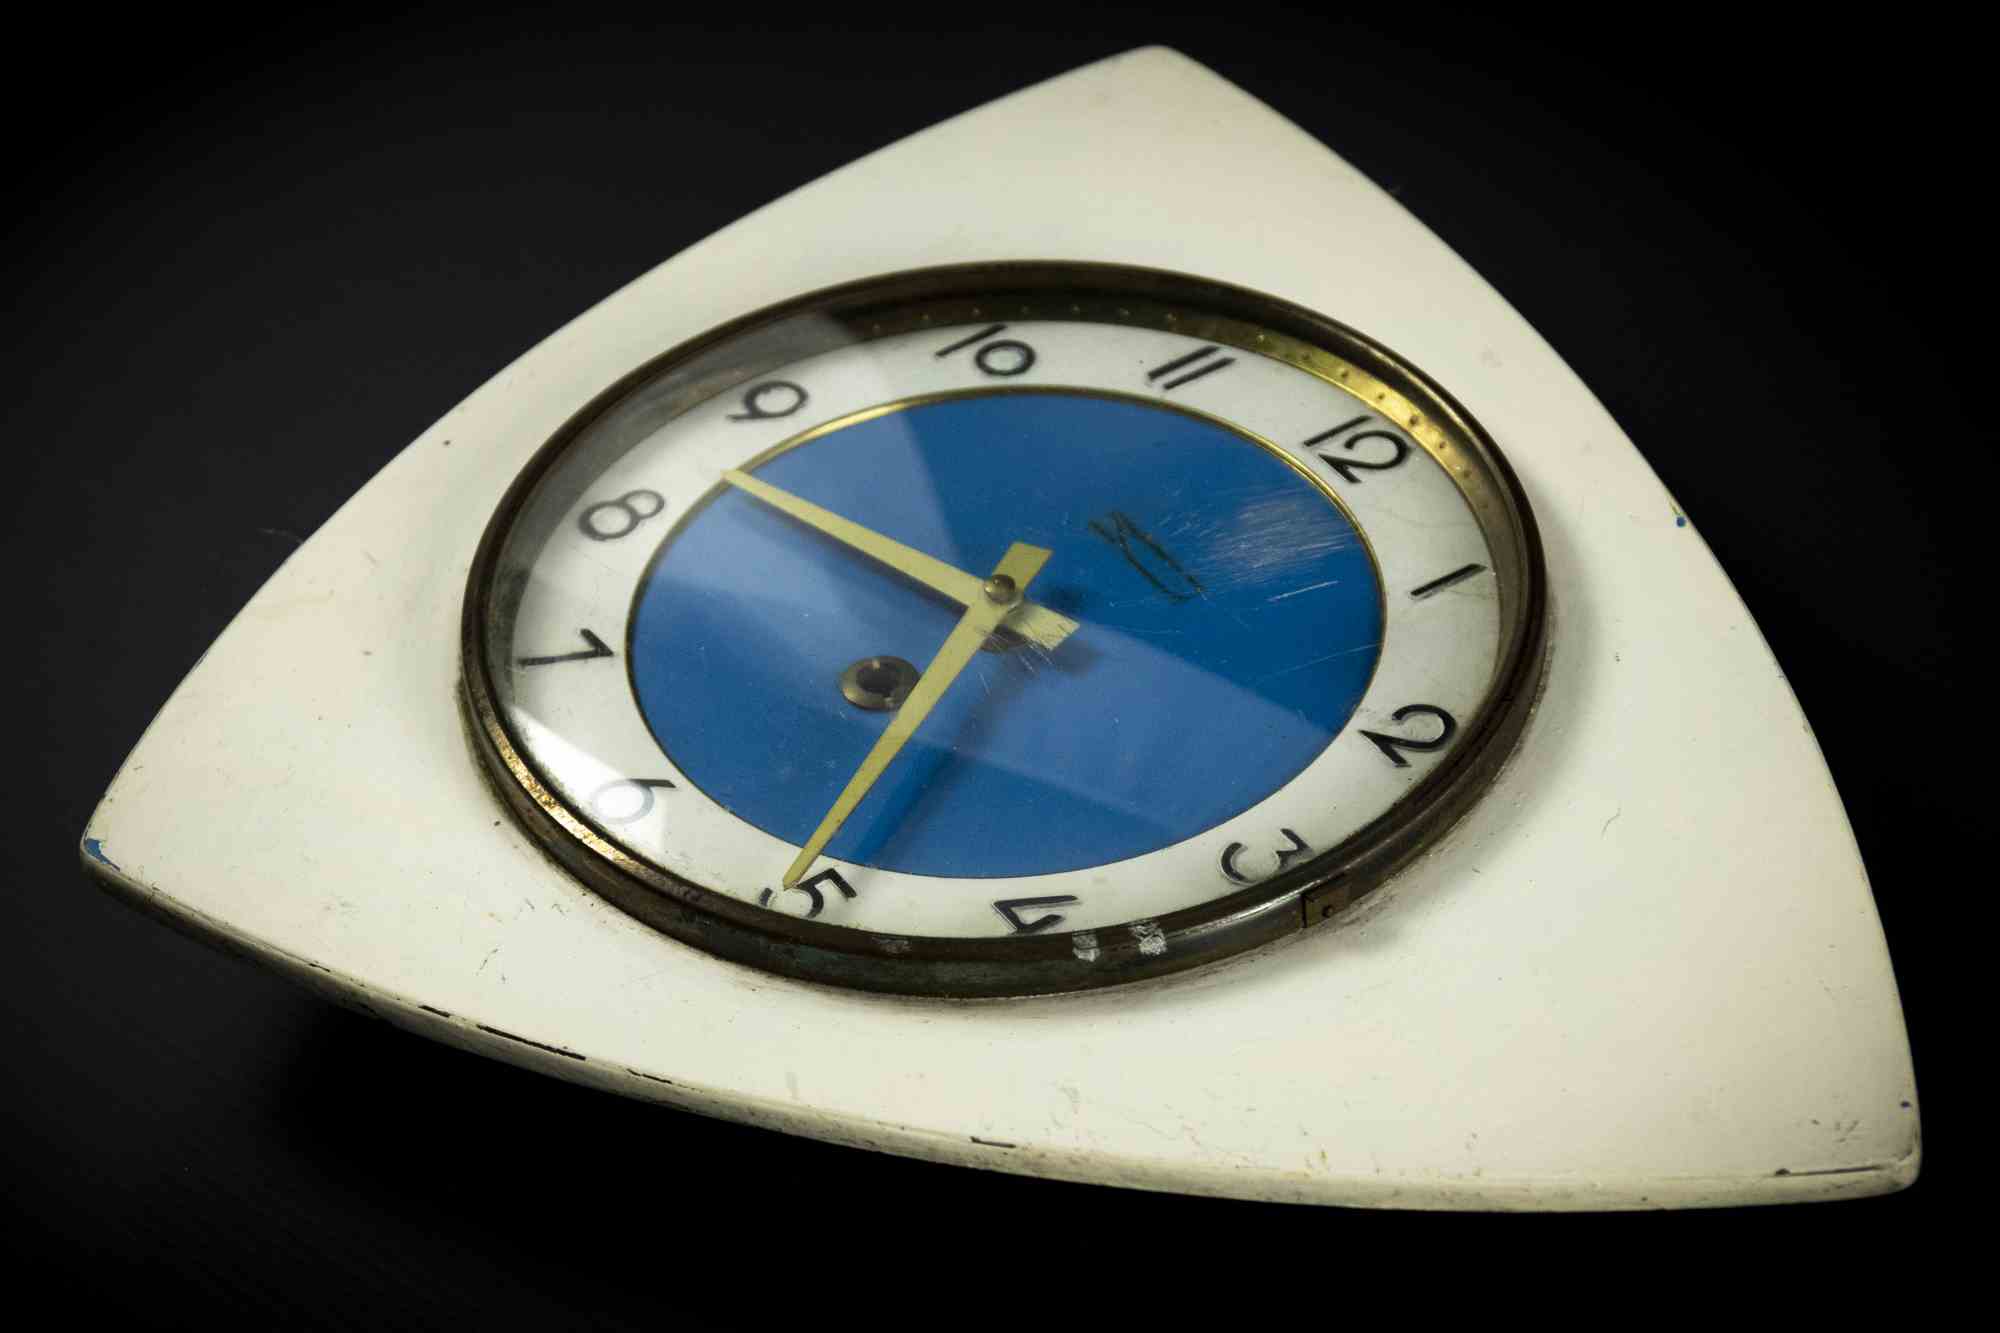 Vintage Clock ist ein dekoratives Objekt aus den 1970er Jahren.

Eine alte Plastikuhr.

Das perfekte Geschenk für einen Sprung in die Vergangenheit.

Aufgrund der Zeit nicht in perfektem Zustand.